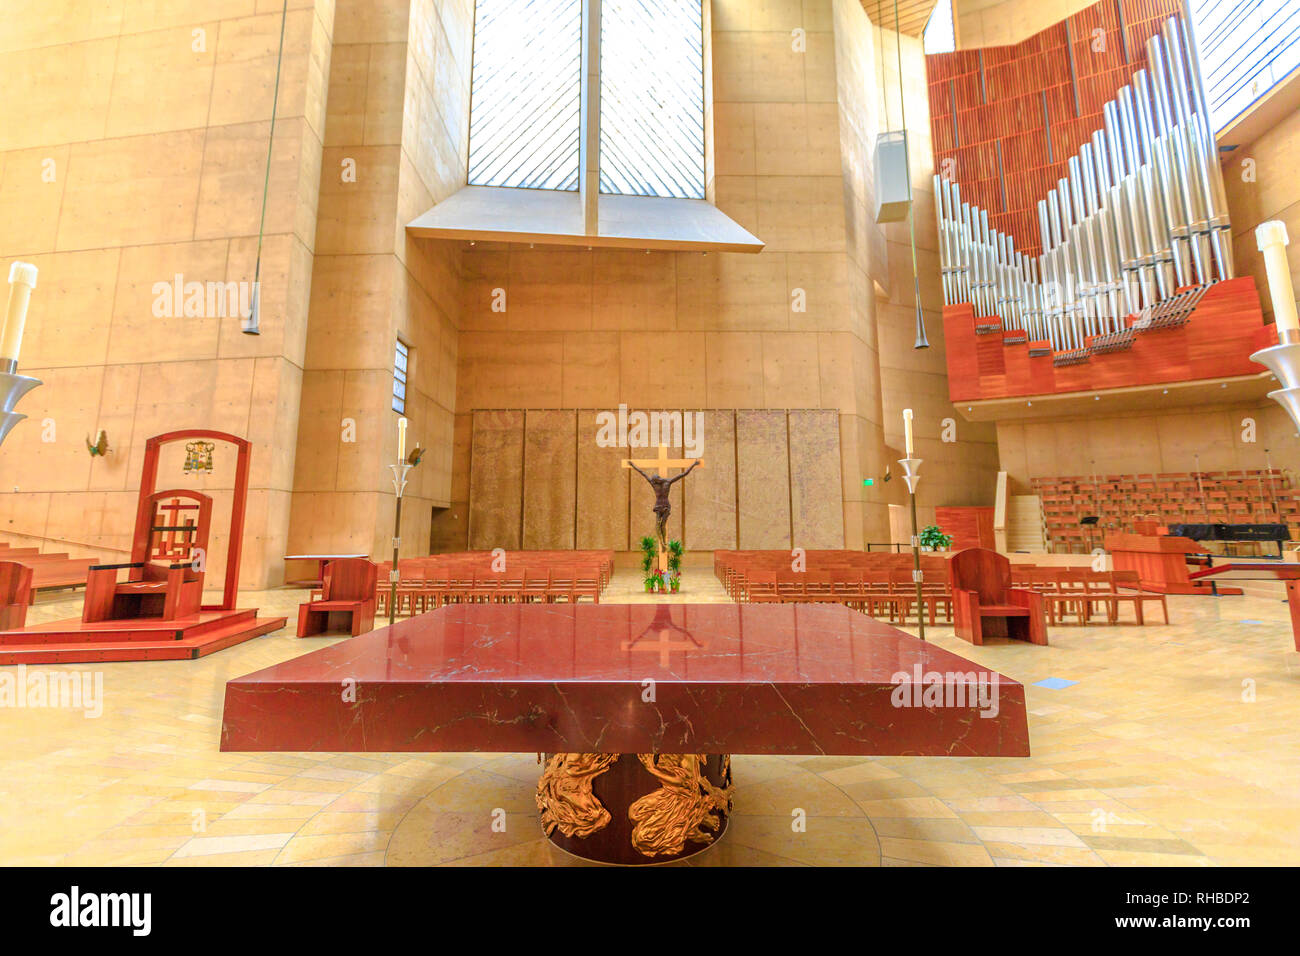 Los Angeles, Kalifornien, Vereinigte Staaten - 9. August 2018: Altar mit Kreuz und die Orgel in der Kathedrale Unserer Lieben Frau von den Engeln auf der Temple Street, LA des Stockfoto